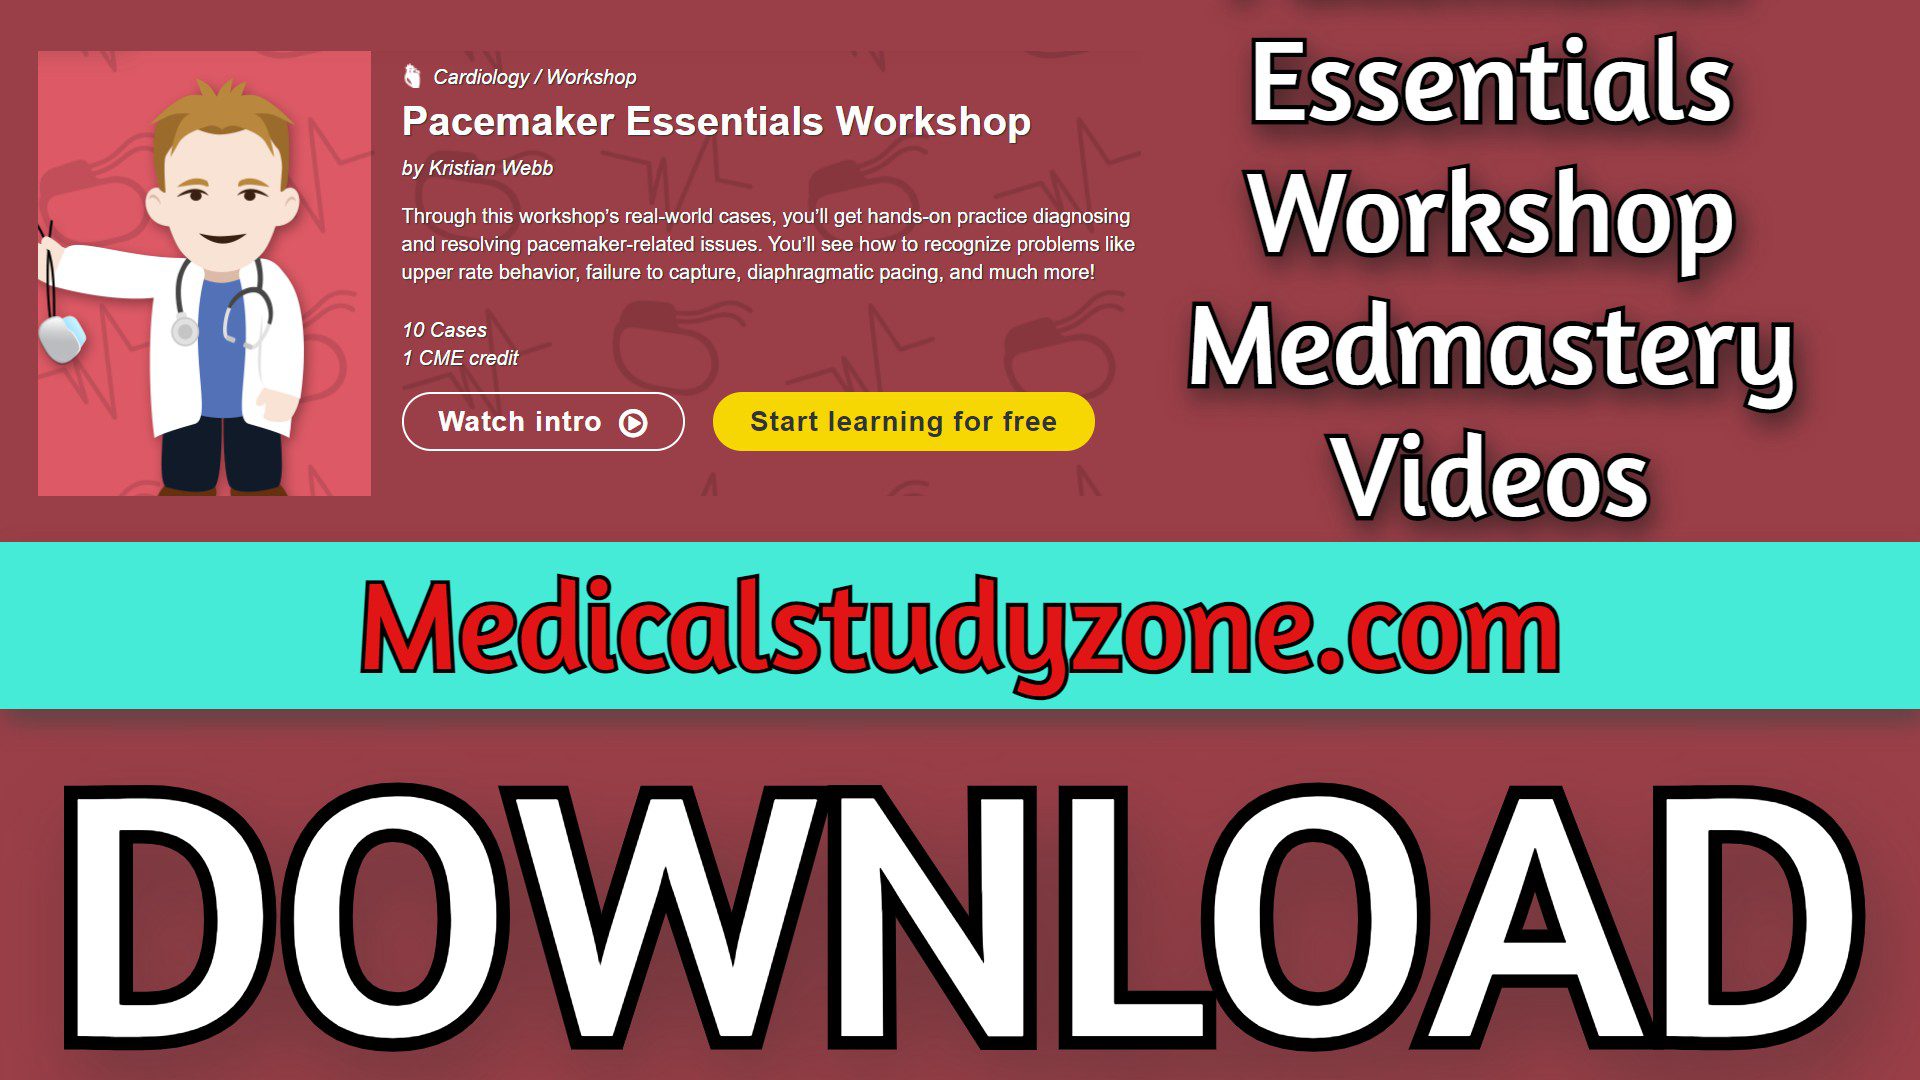 Pacemaker Essentials Workshop | Medmastery 2023 Videos Free Download